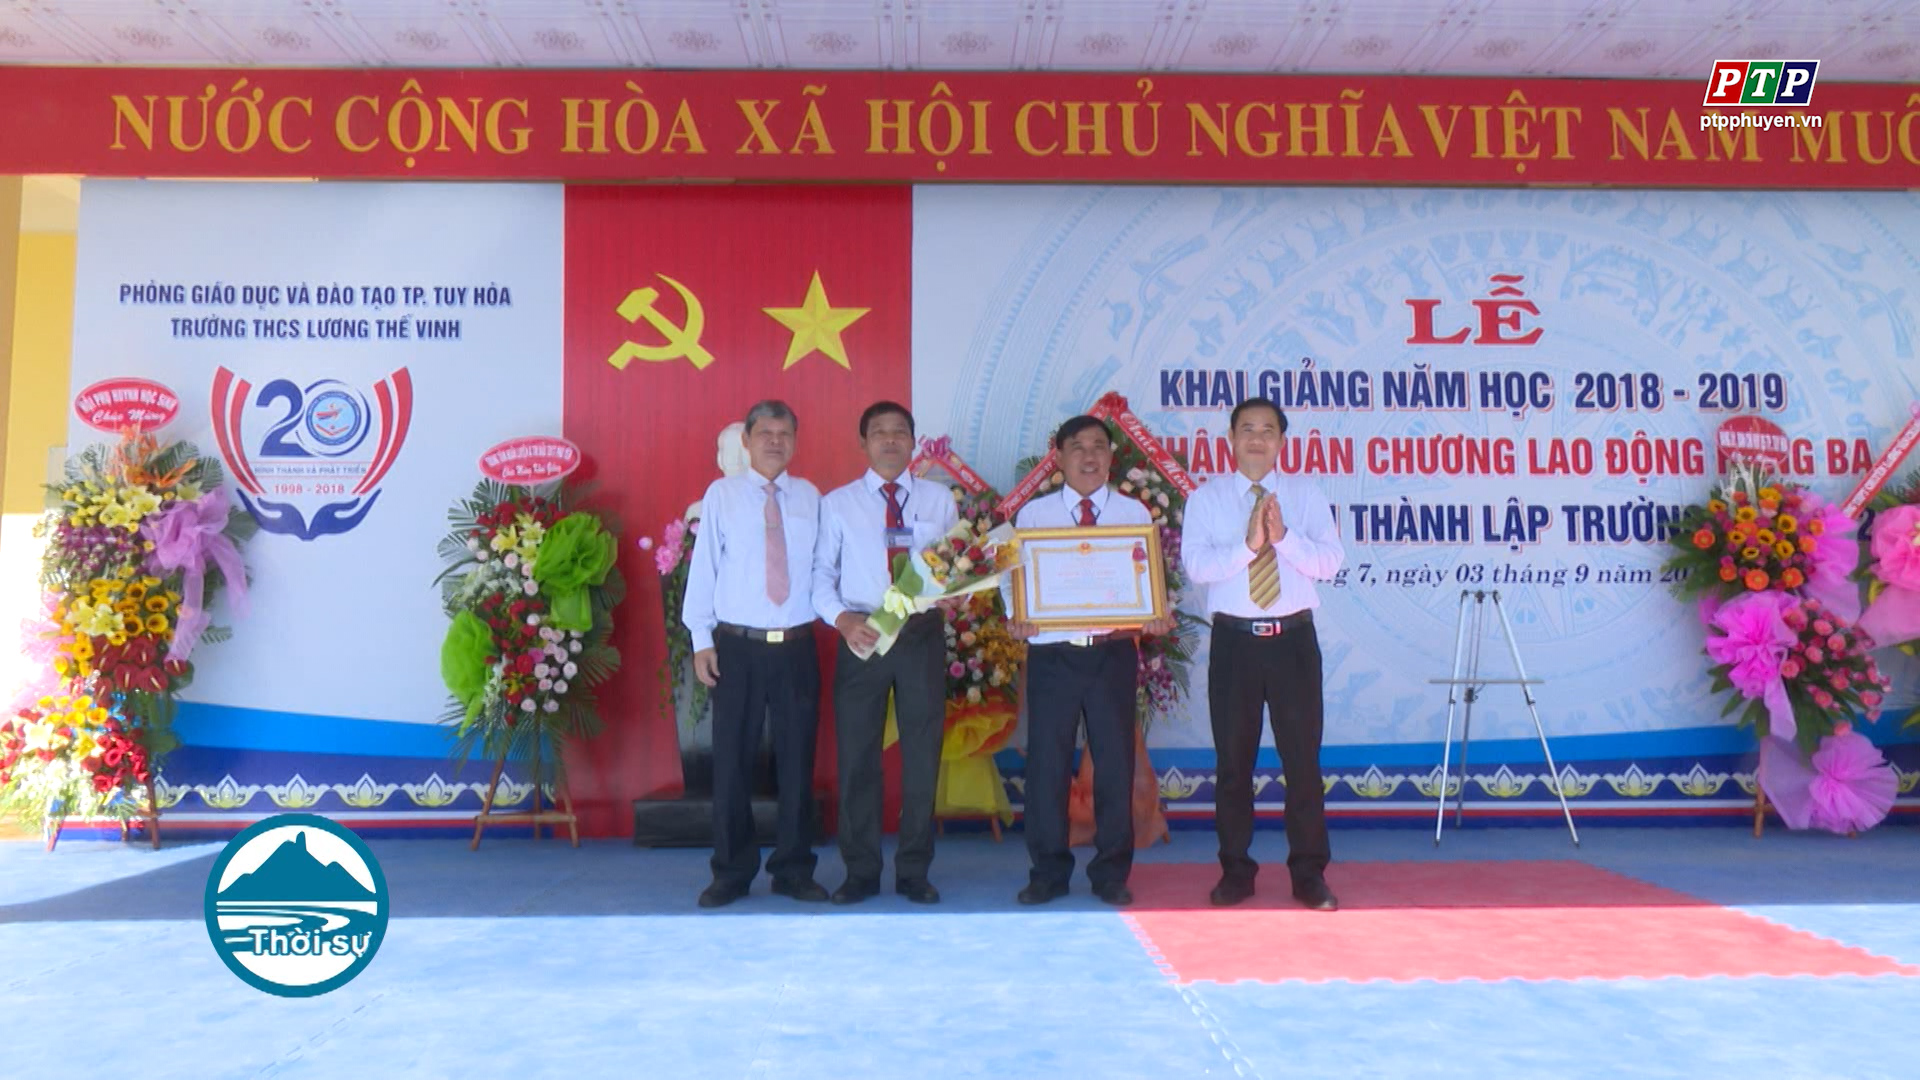 Trường THCS Lương Thế Vinh, Tp. Tuy Hòa đón nhận huân chương lao động hạng 3